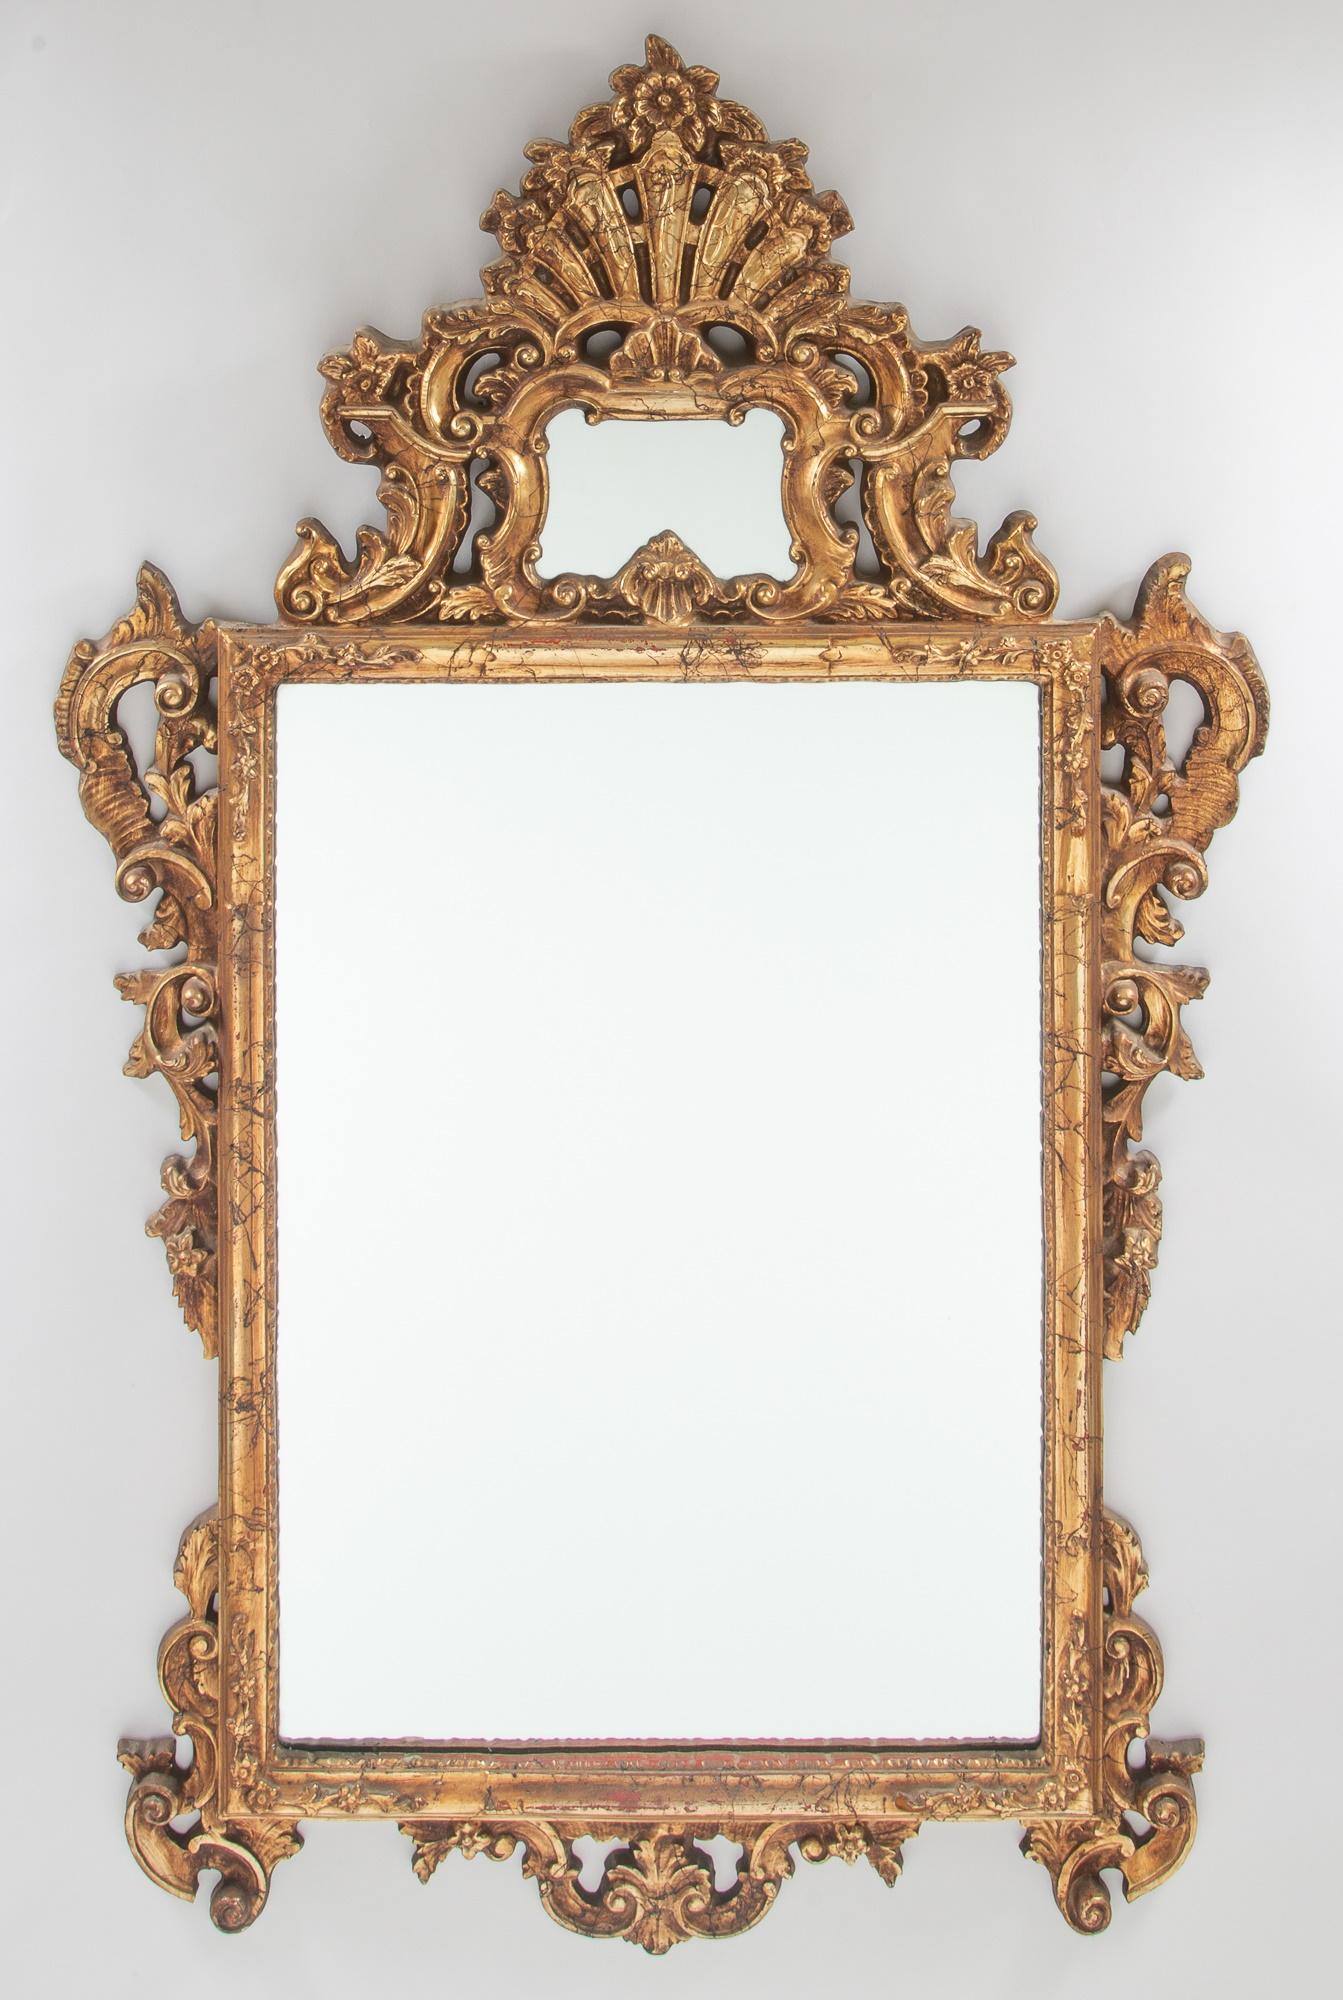 Verleihen Sie Ihrem Zuhause einen Hauch von Eleganz und Opulenz mit diesem atemberaubenden, handgeschnitzten und vergoldeten Kaminsims-Spiegel aus der Mitte des 20. Jahrhunderts im Rokoko-Stil. Der Spiegel wird von einem exquisit verzierten Rahmen